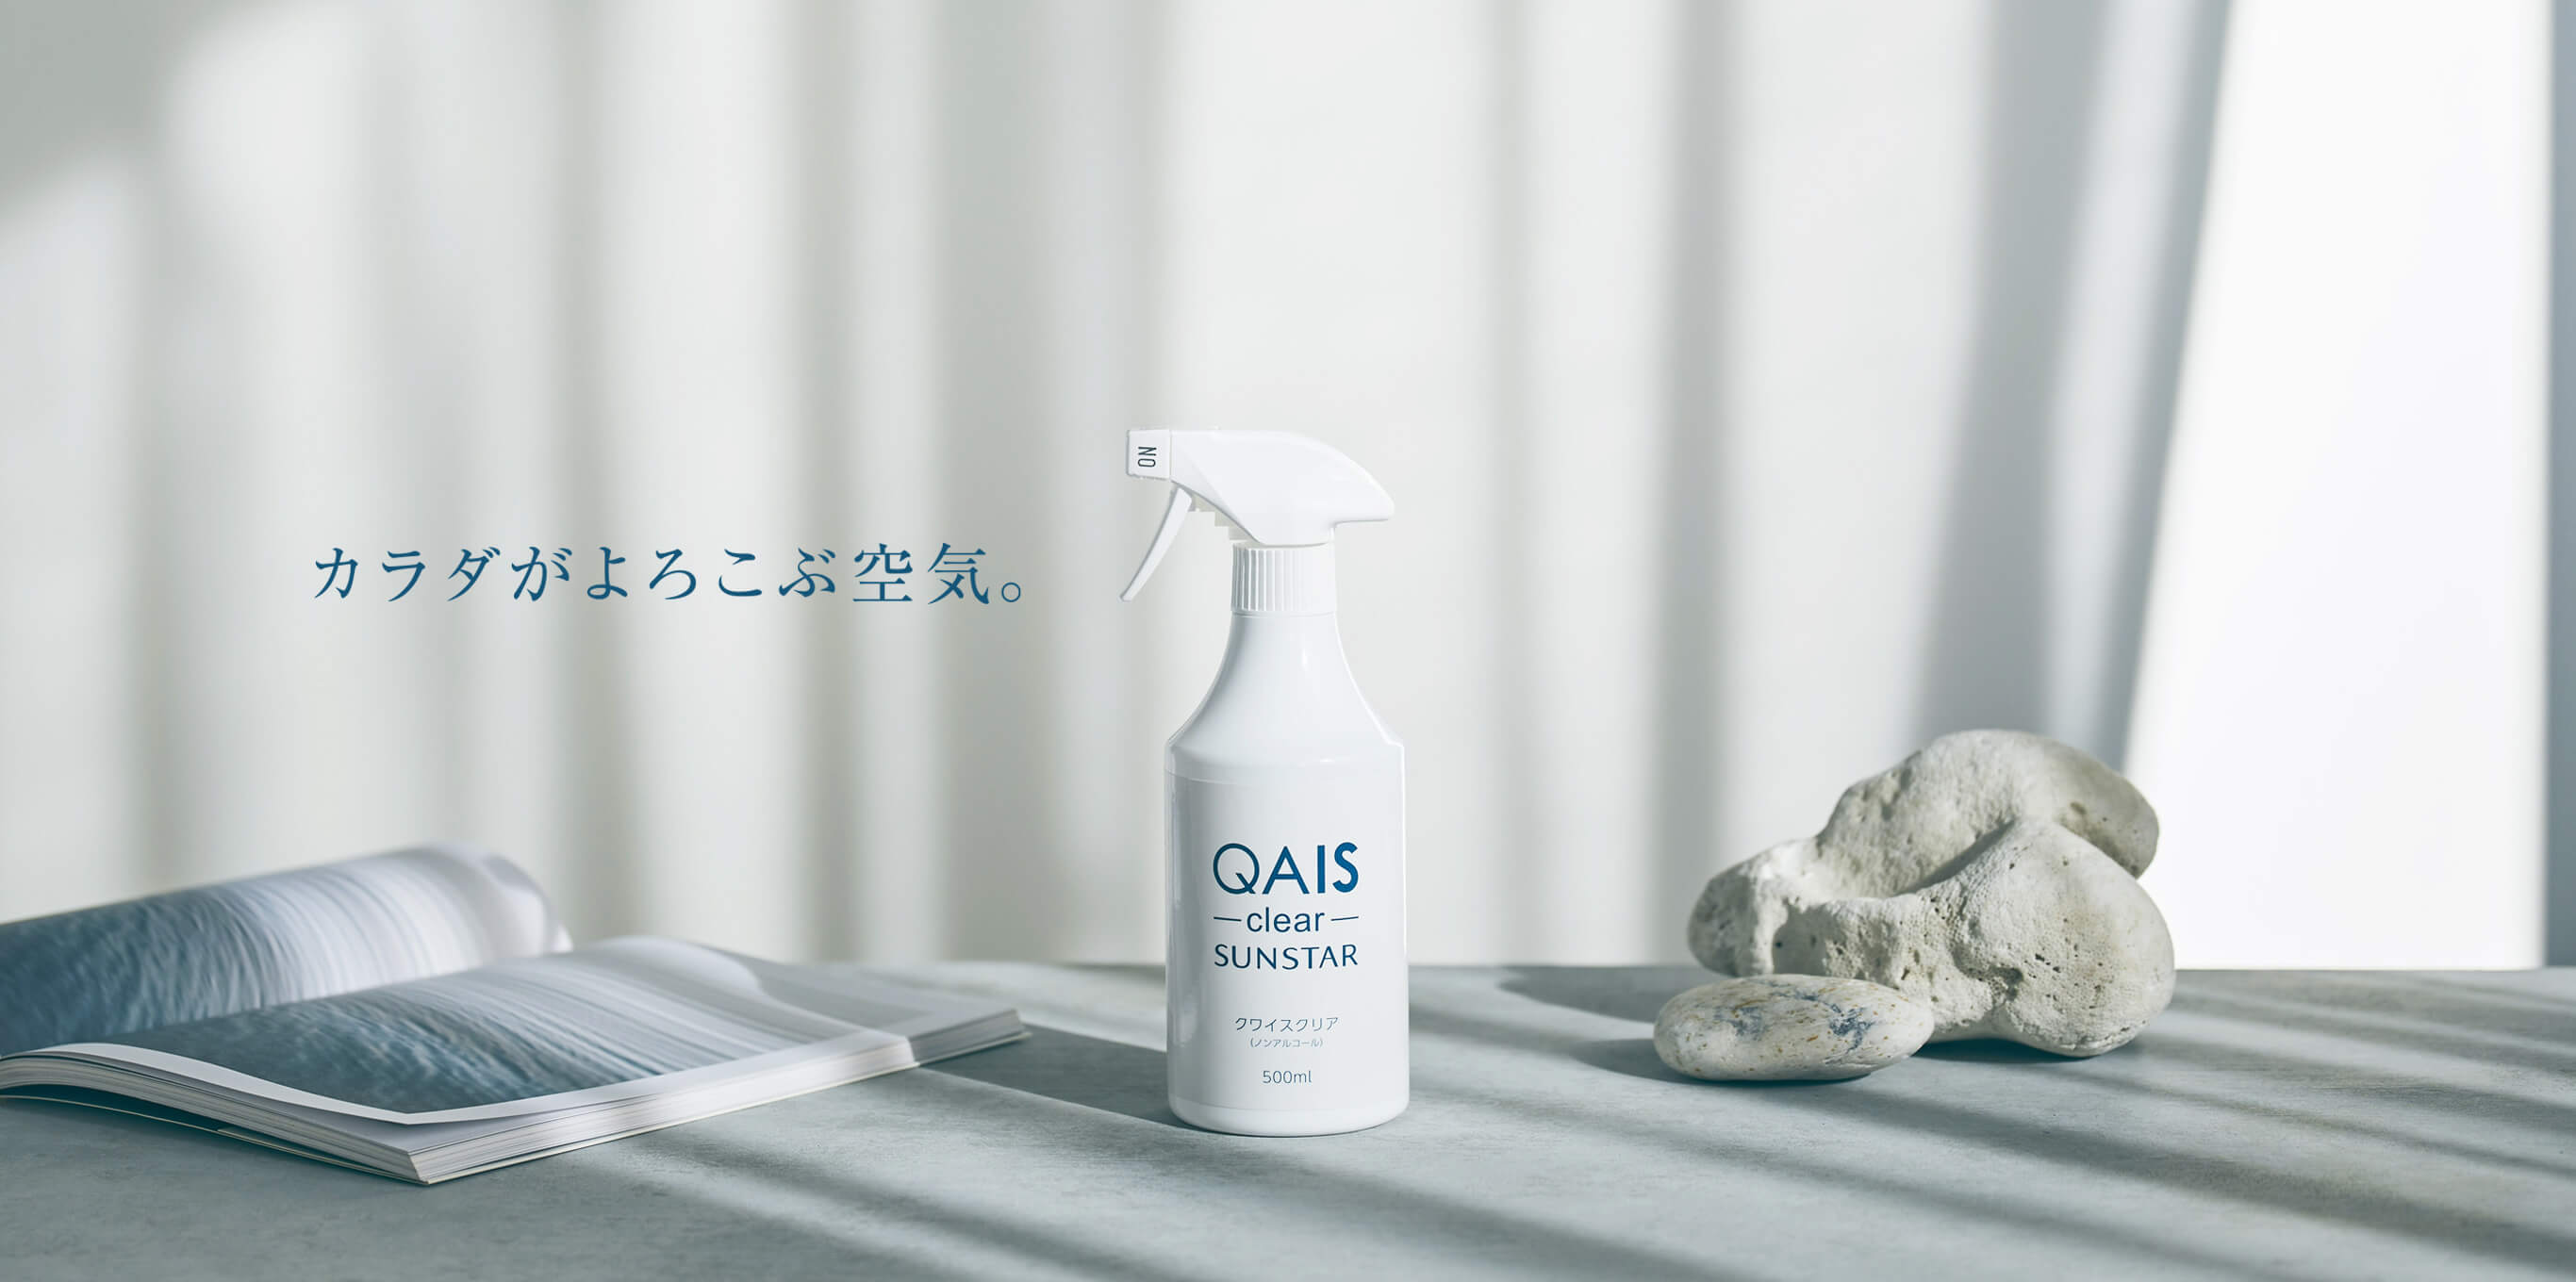 カラダがよろこぶ空気 QAIS -clear- SUNSTAR 消臭除菌水という選択。